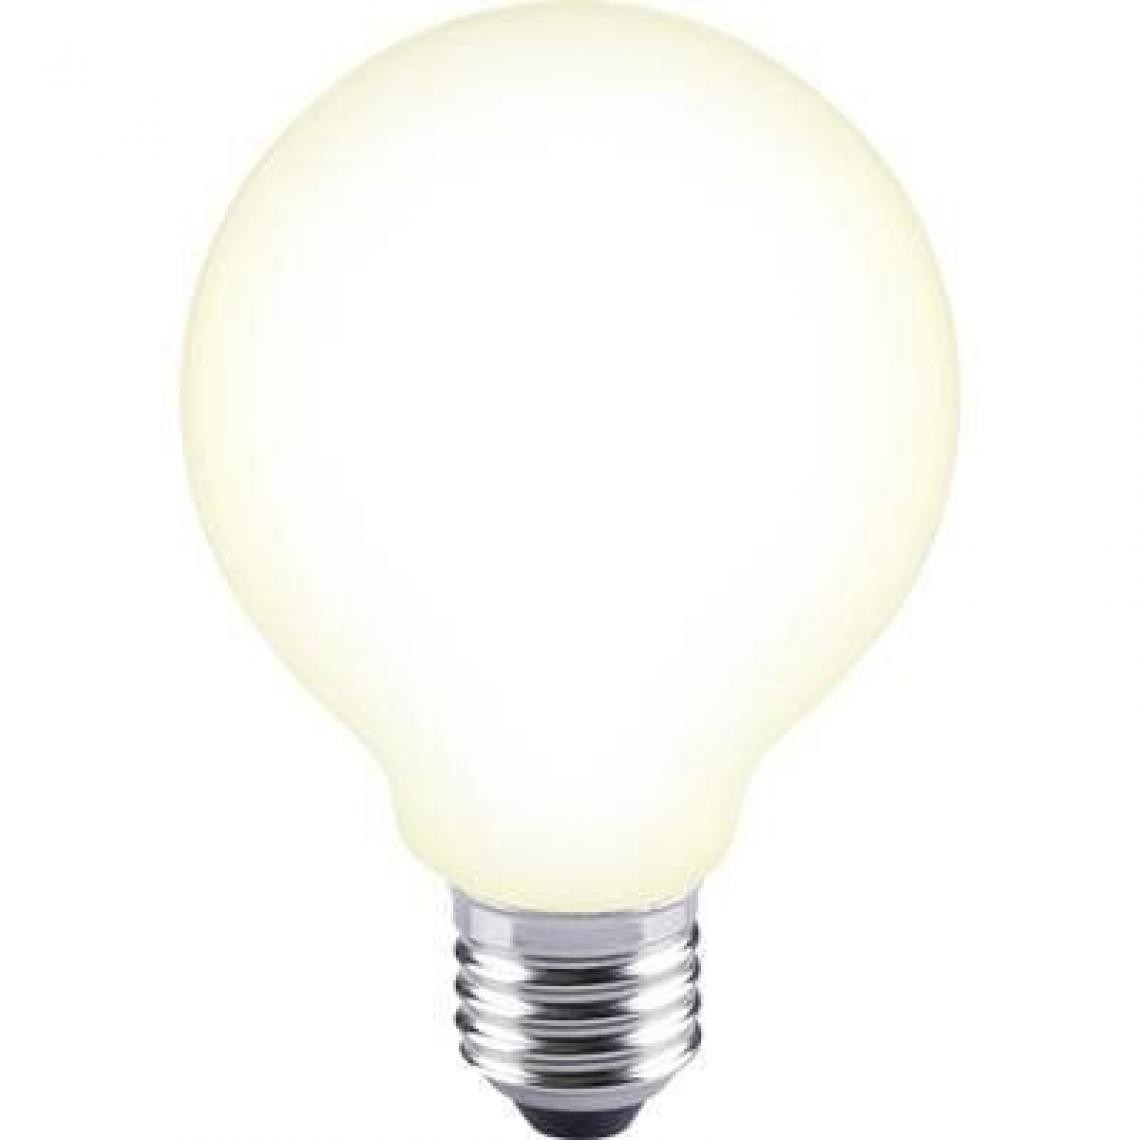 Inconnu - Ampoule LED E27 Sygonix en forme de globe 12 W = 88 W blanc chaud (Ø x L) 80 mm x 115 mm EEC: classe A++ à filament 1 p - Ampoules LED